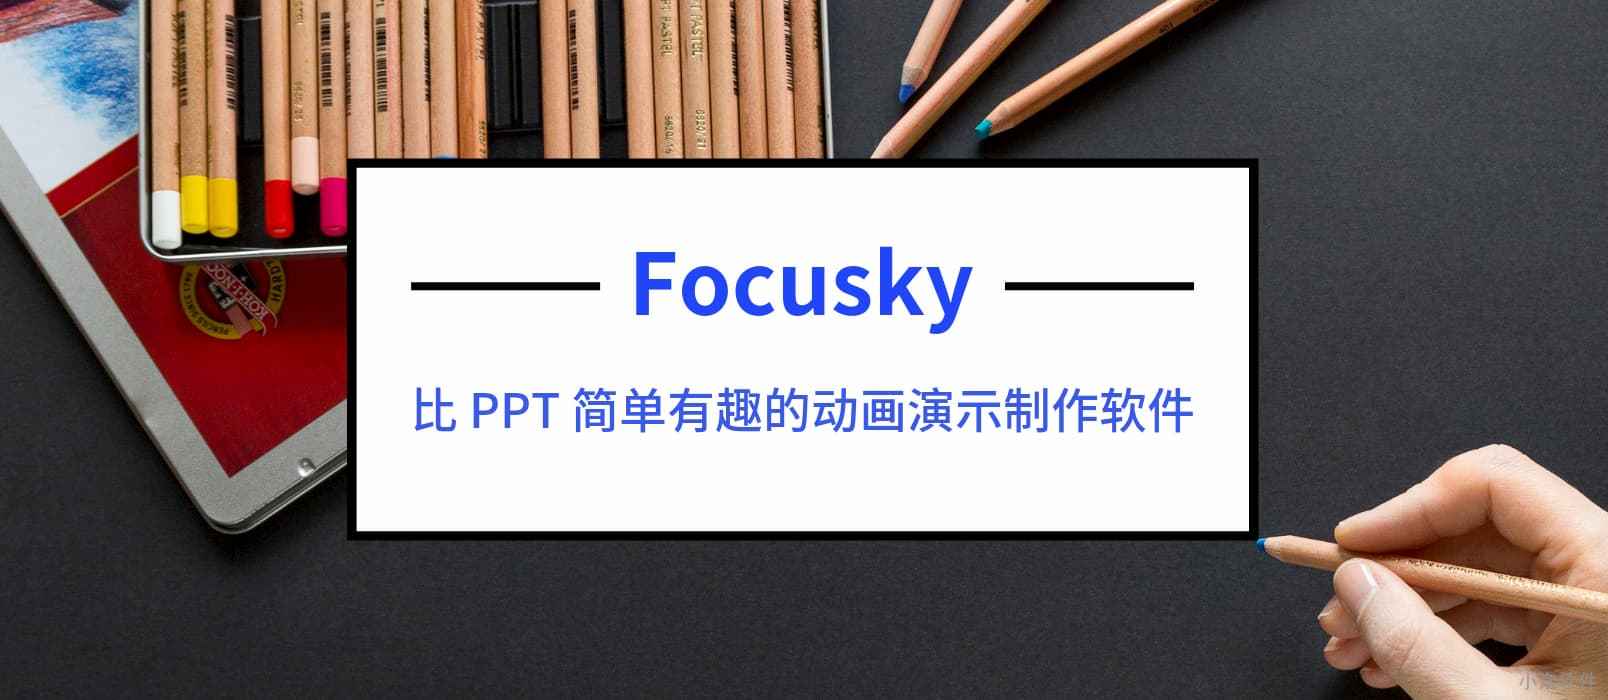 制作炫酷动画 PPT 的软件 – Focusky 送3000个 特别版激活码 1